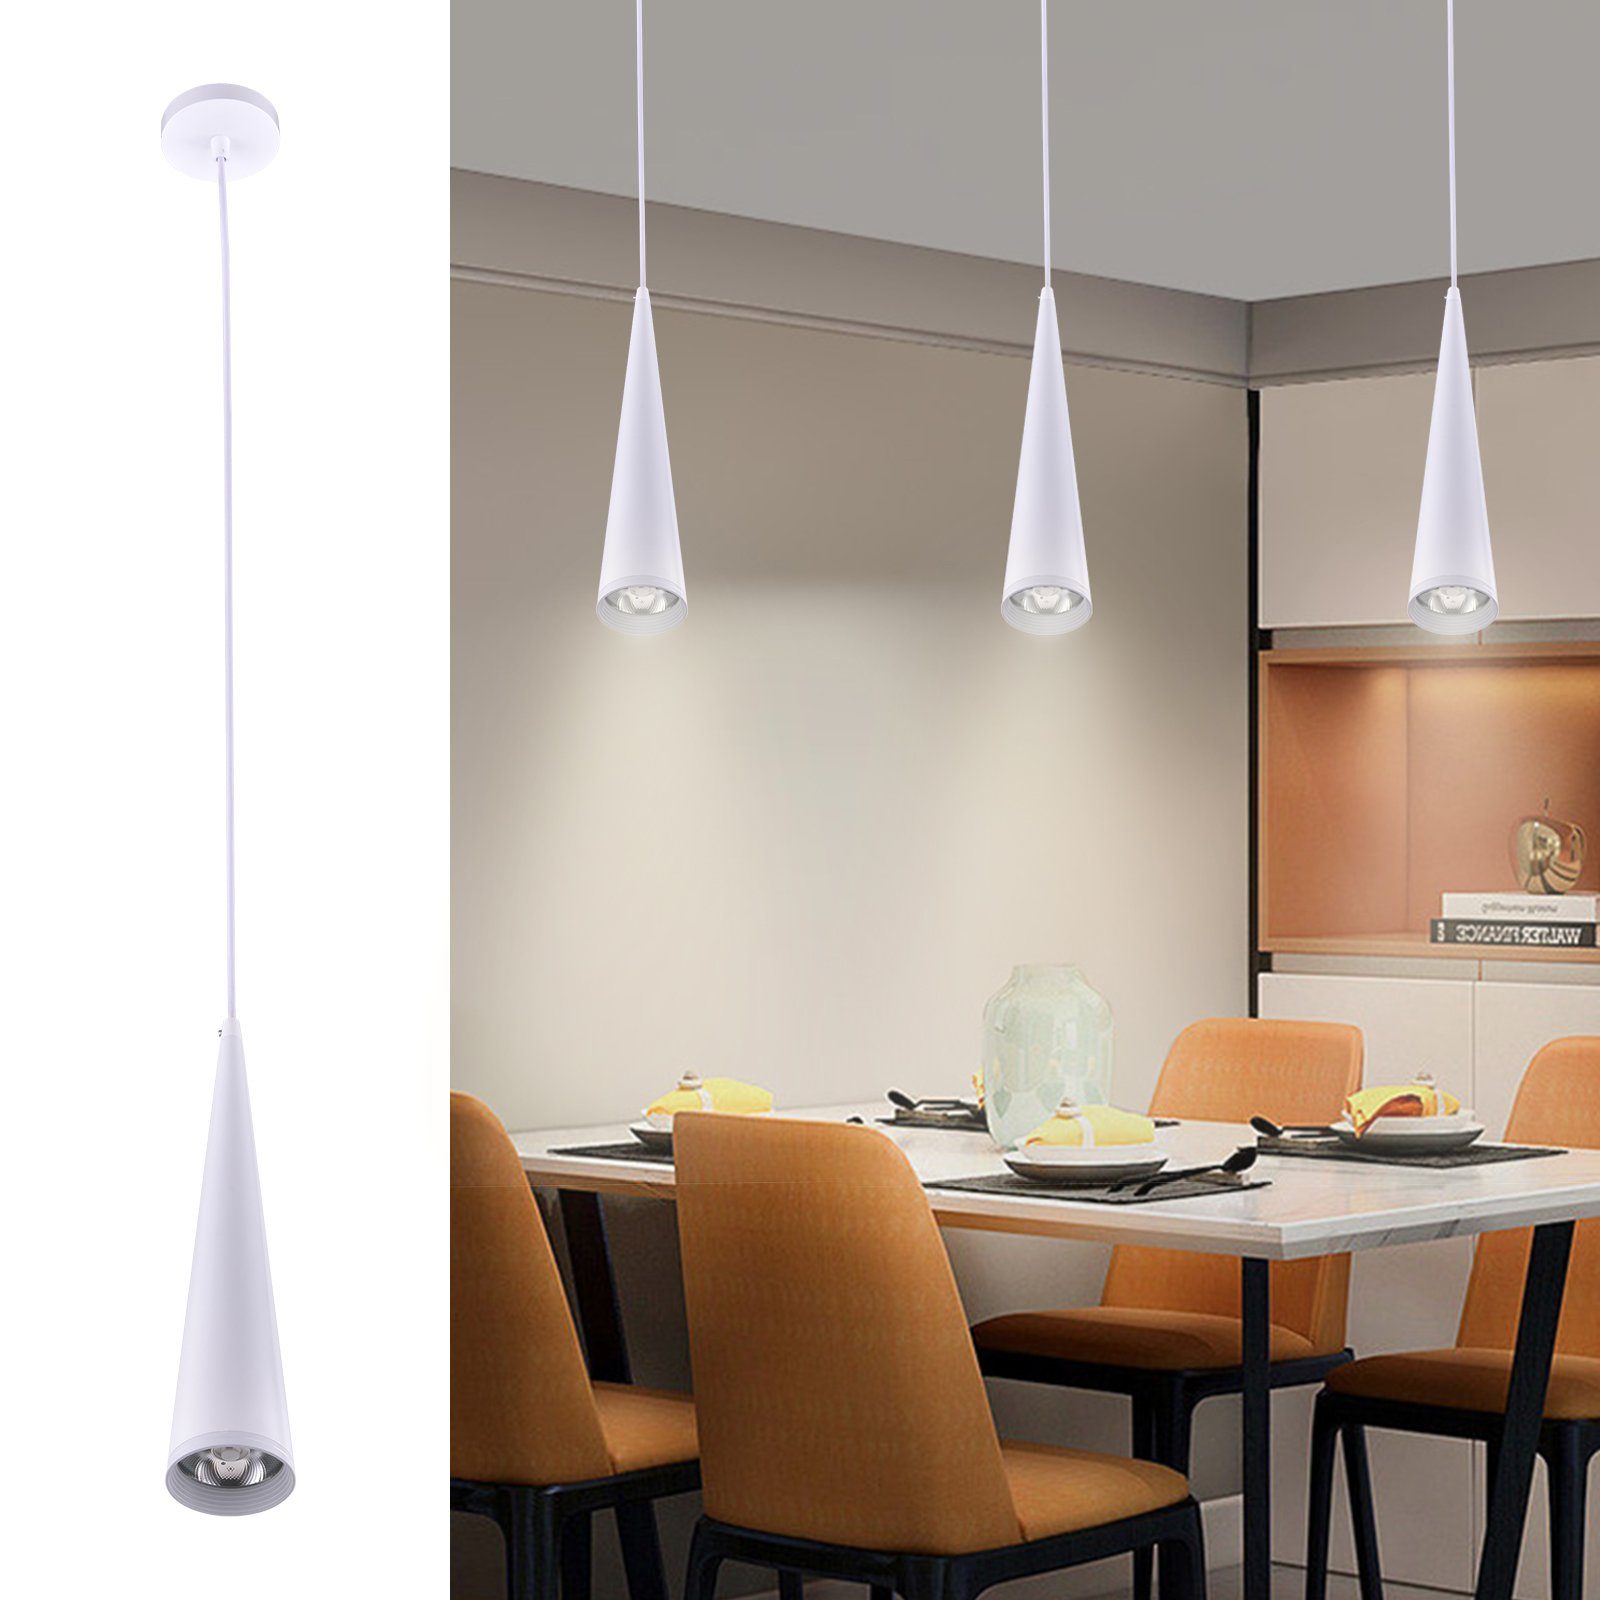 MUPOO LED-Hängeleuchte LED Pendelleuchte 1Flammig 7W Hängelampe Höhenverstellbar,Schwarz/Weiß, Weiß, Deckenleuchten für über Kochinsel & Kücheninsel Hängend